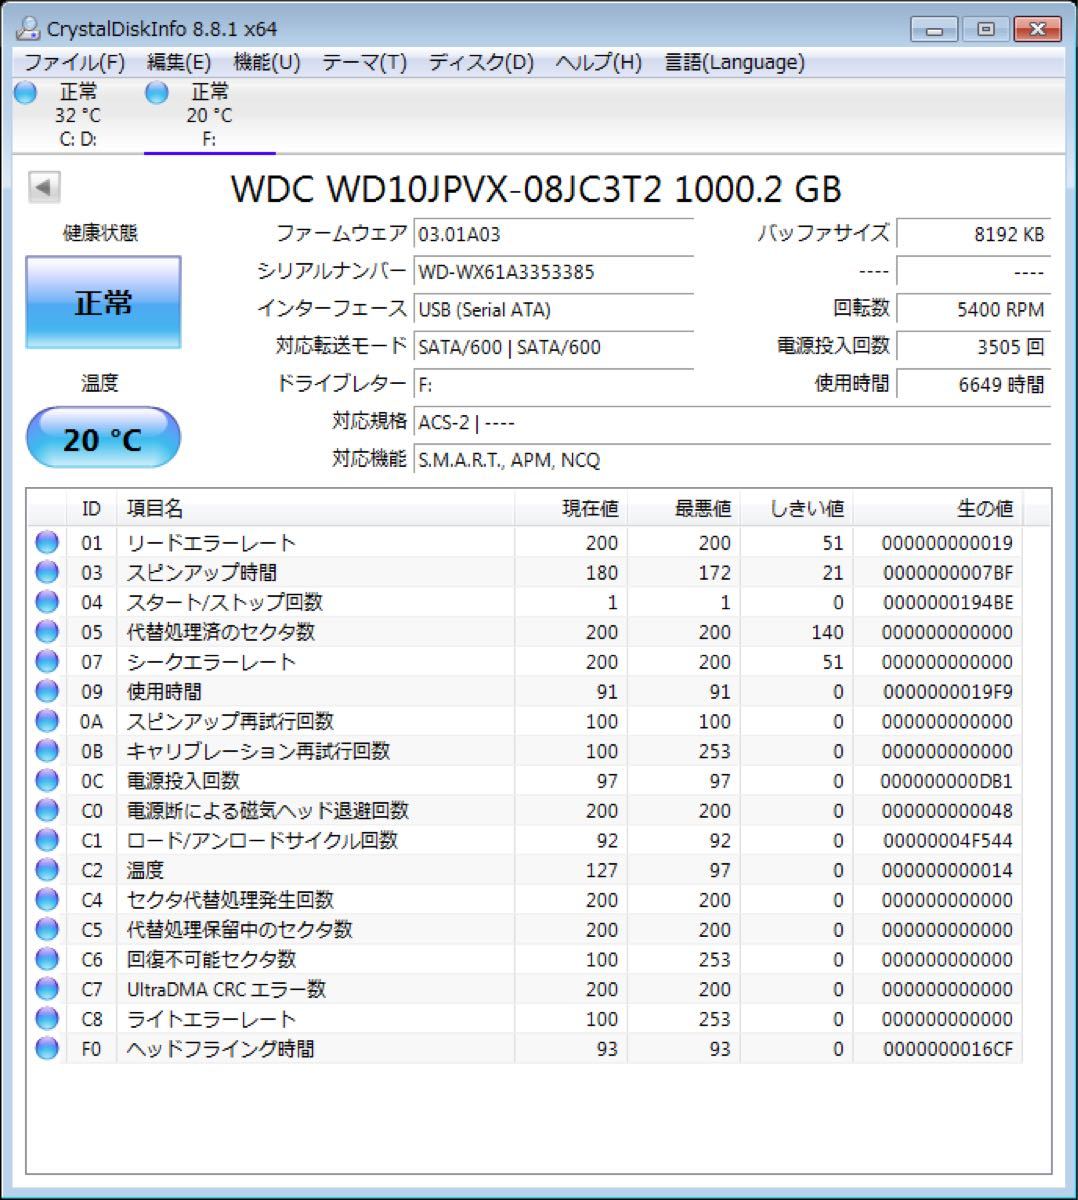 1 TB  HDD USB3.0 外付け ポータブル ハードディスク 2.5 1.0tb 1000GB